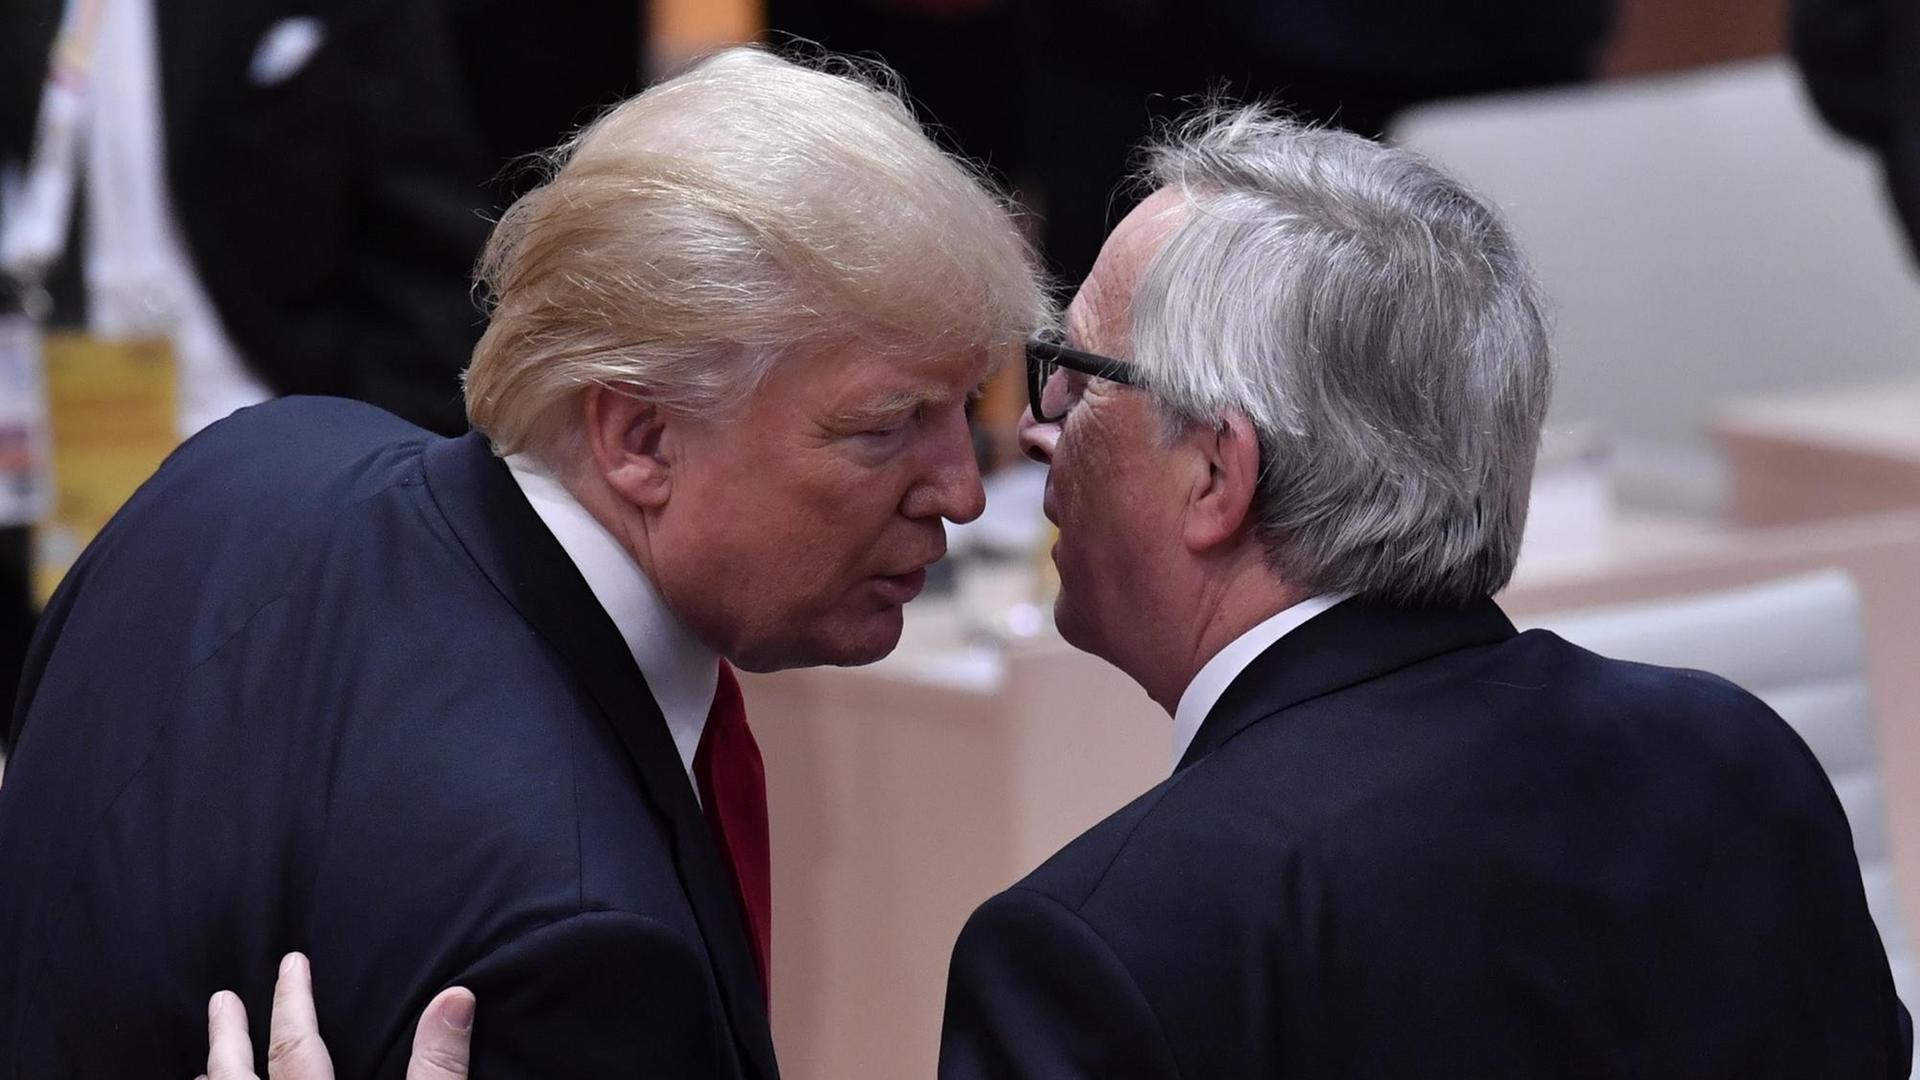 Zu sehen sind EU-Kommissionspräsident Jean-Claude Juncker (r.) und US-Präsident Donald Trump während des G20-Gipfels in Hamburg am 8. Juli 2017. Sie sind von hinten fotografiert und unterhalten sich einander eng zugewandt.